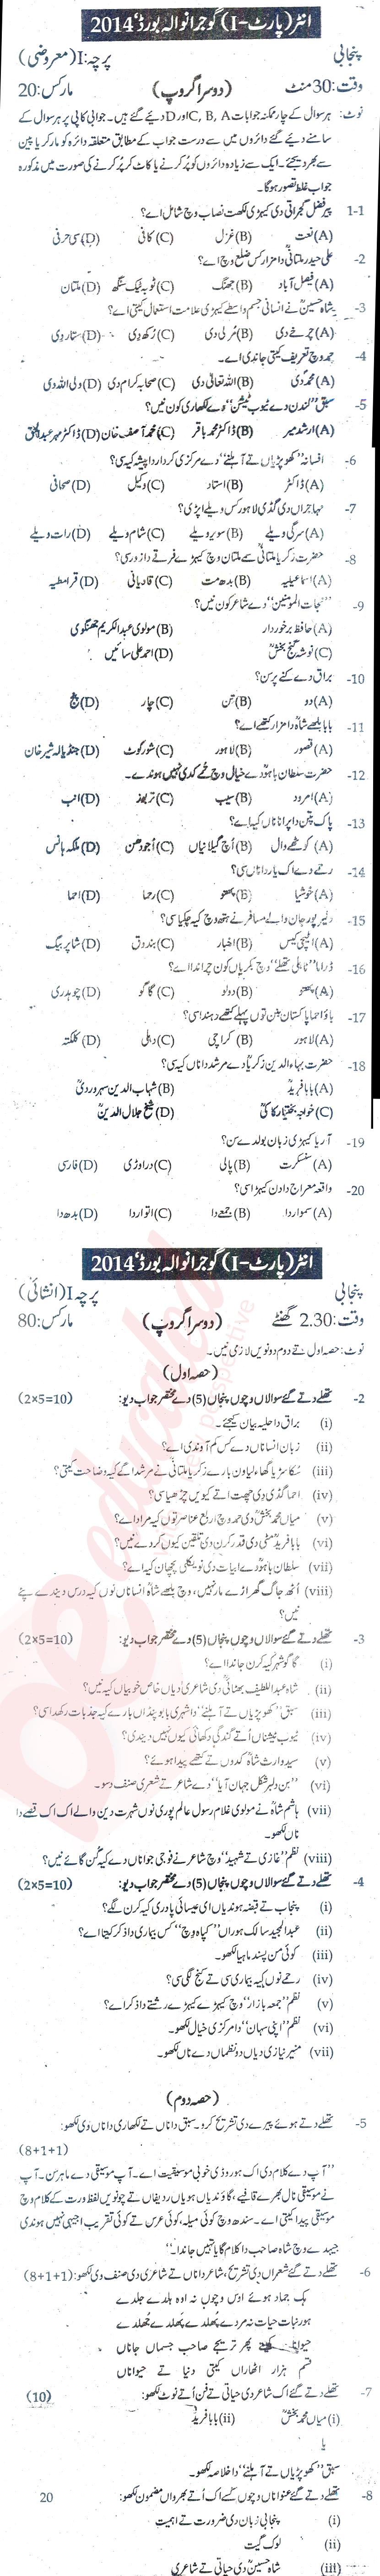 Punjabi FA Part 1 Past Paper Group 2 BISE Gujranwala 2014